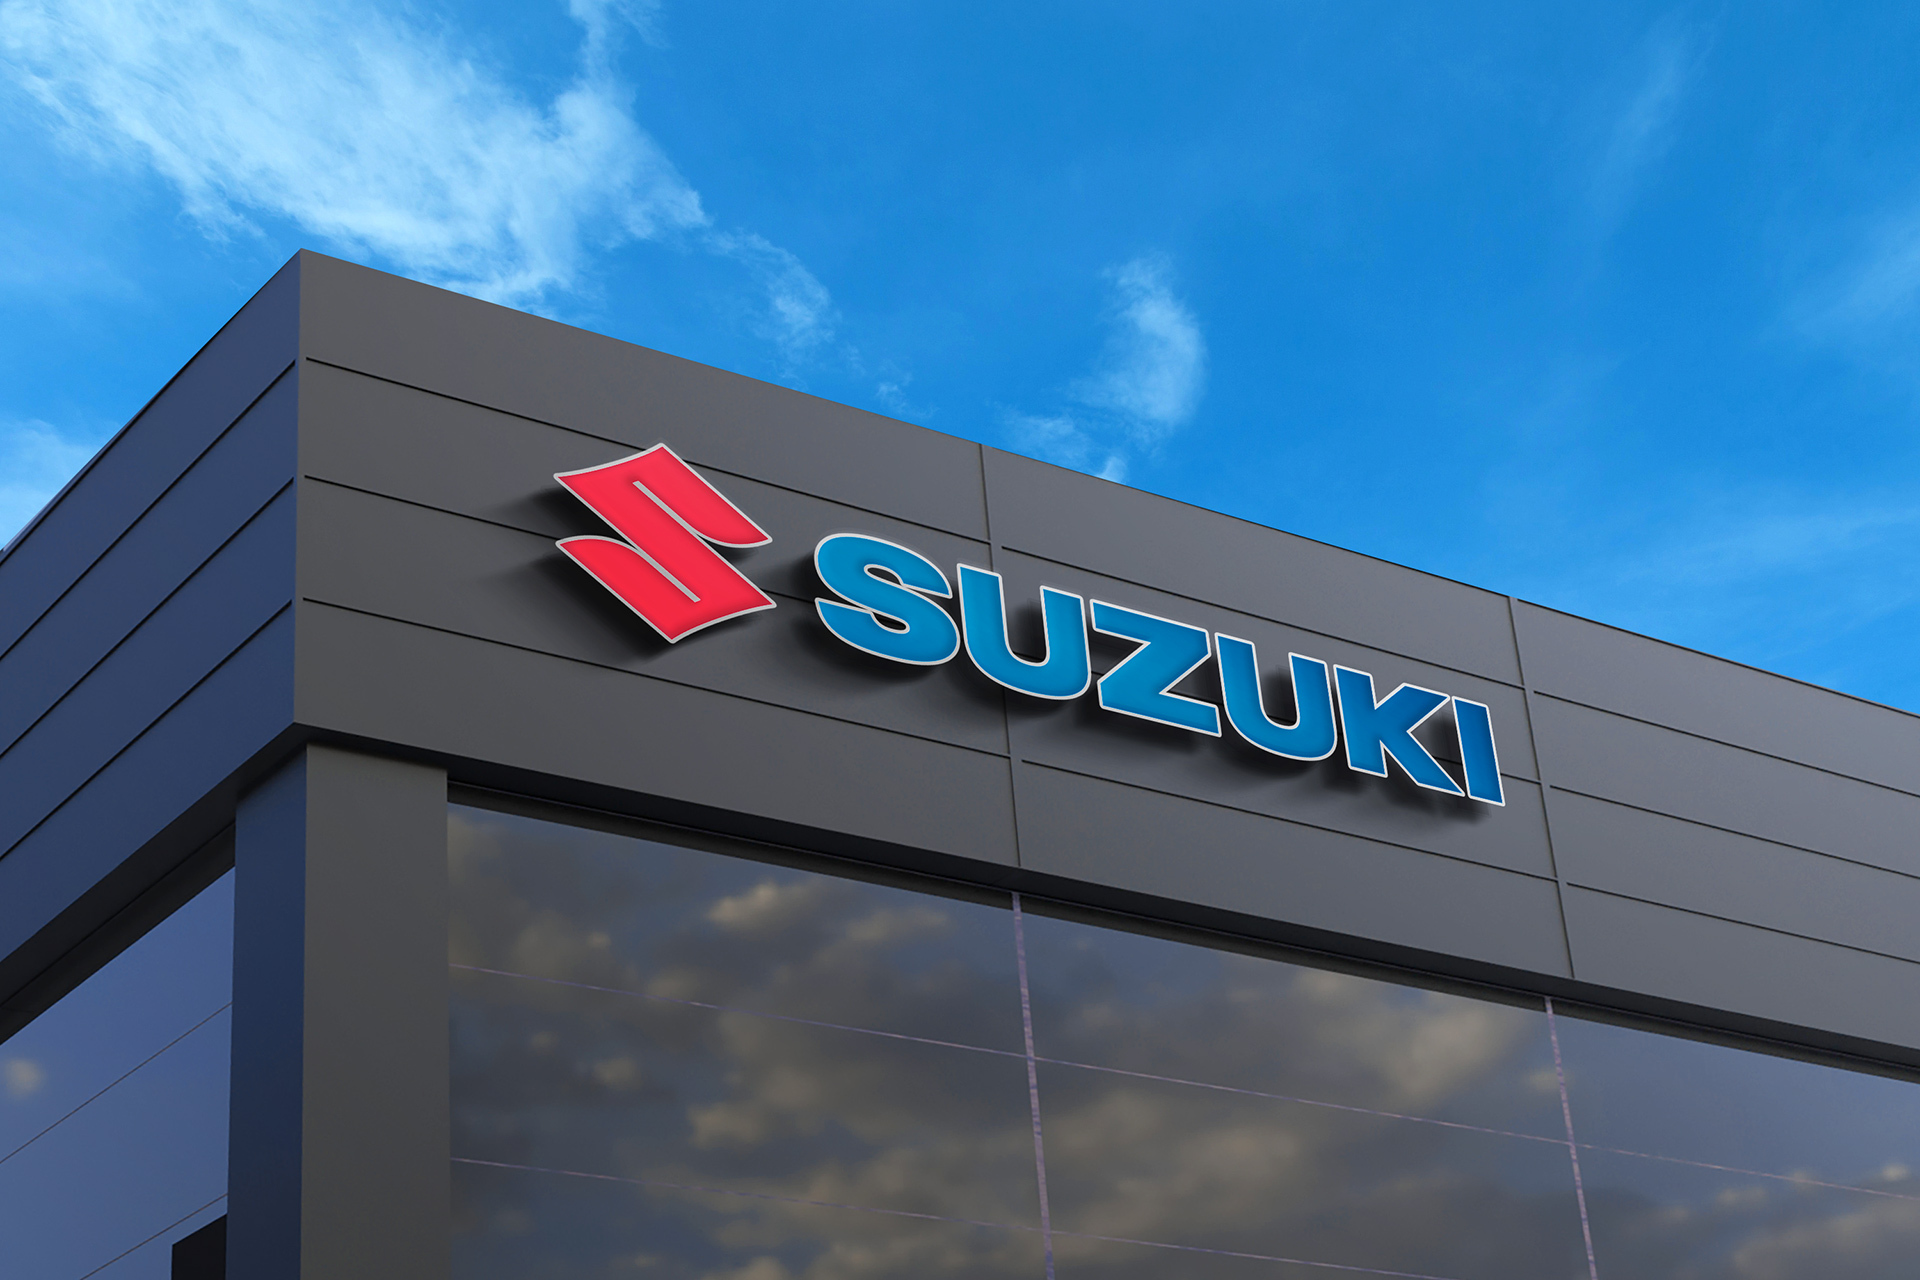 SUZUKI Suzuki gibt seine Technologiestrategie für die nächsten 10 Jahre bekannt